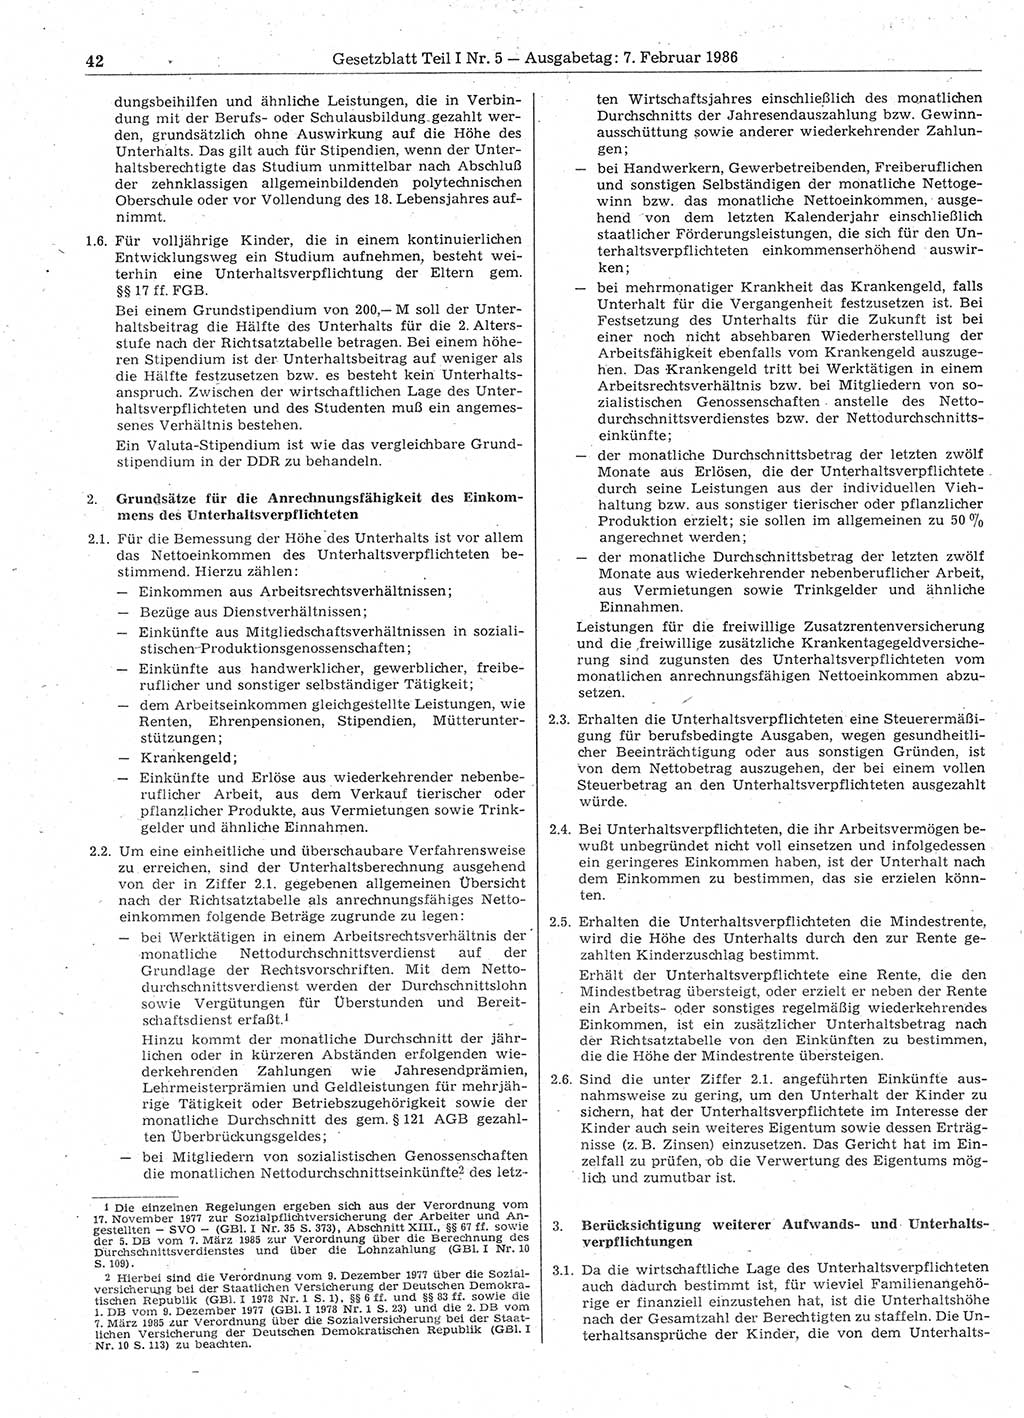 Gesetzblatt (GBl.) der Deutschen Demokratischen Republik (DDR) Teil Ⅰ 1986, Seite 42 (GBl. DDR Ⅰ 1986, S. 42)